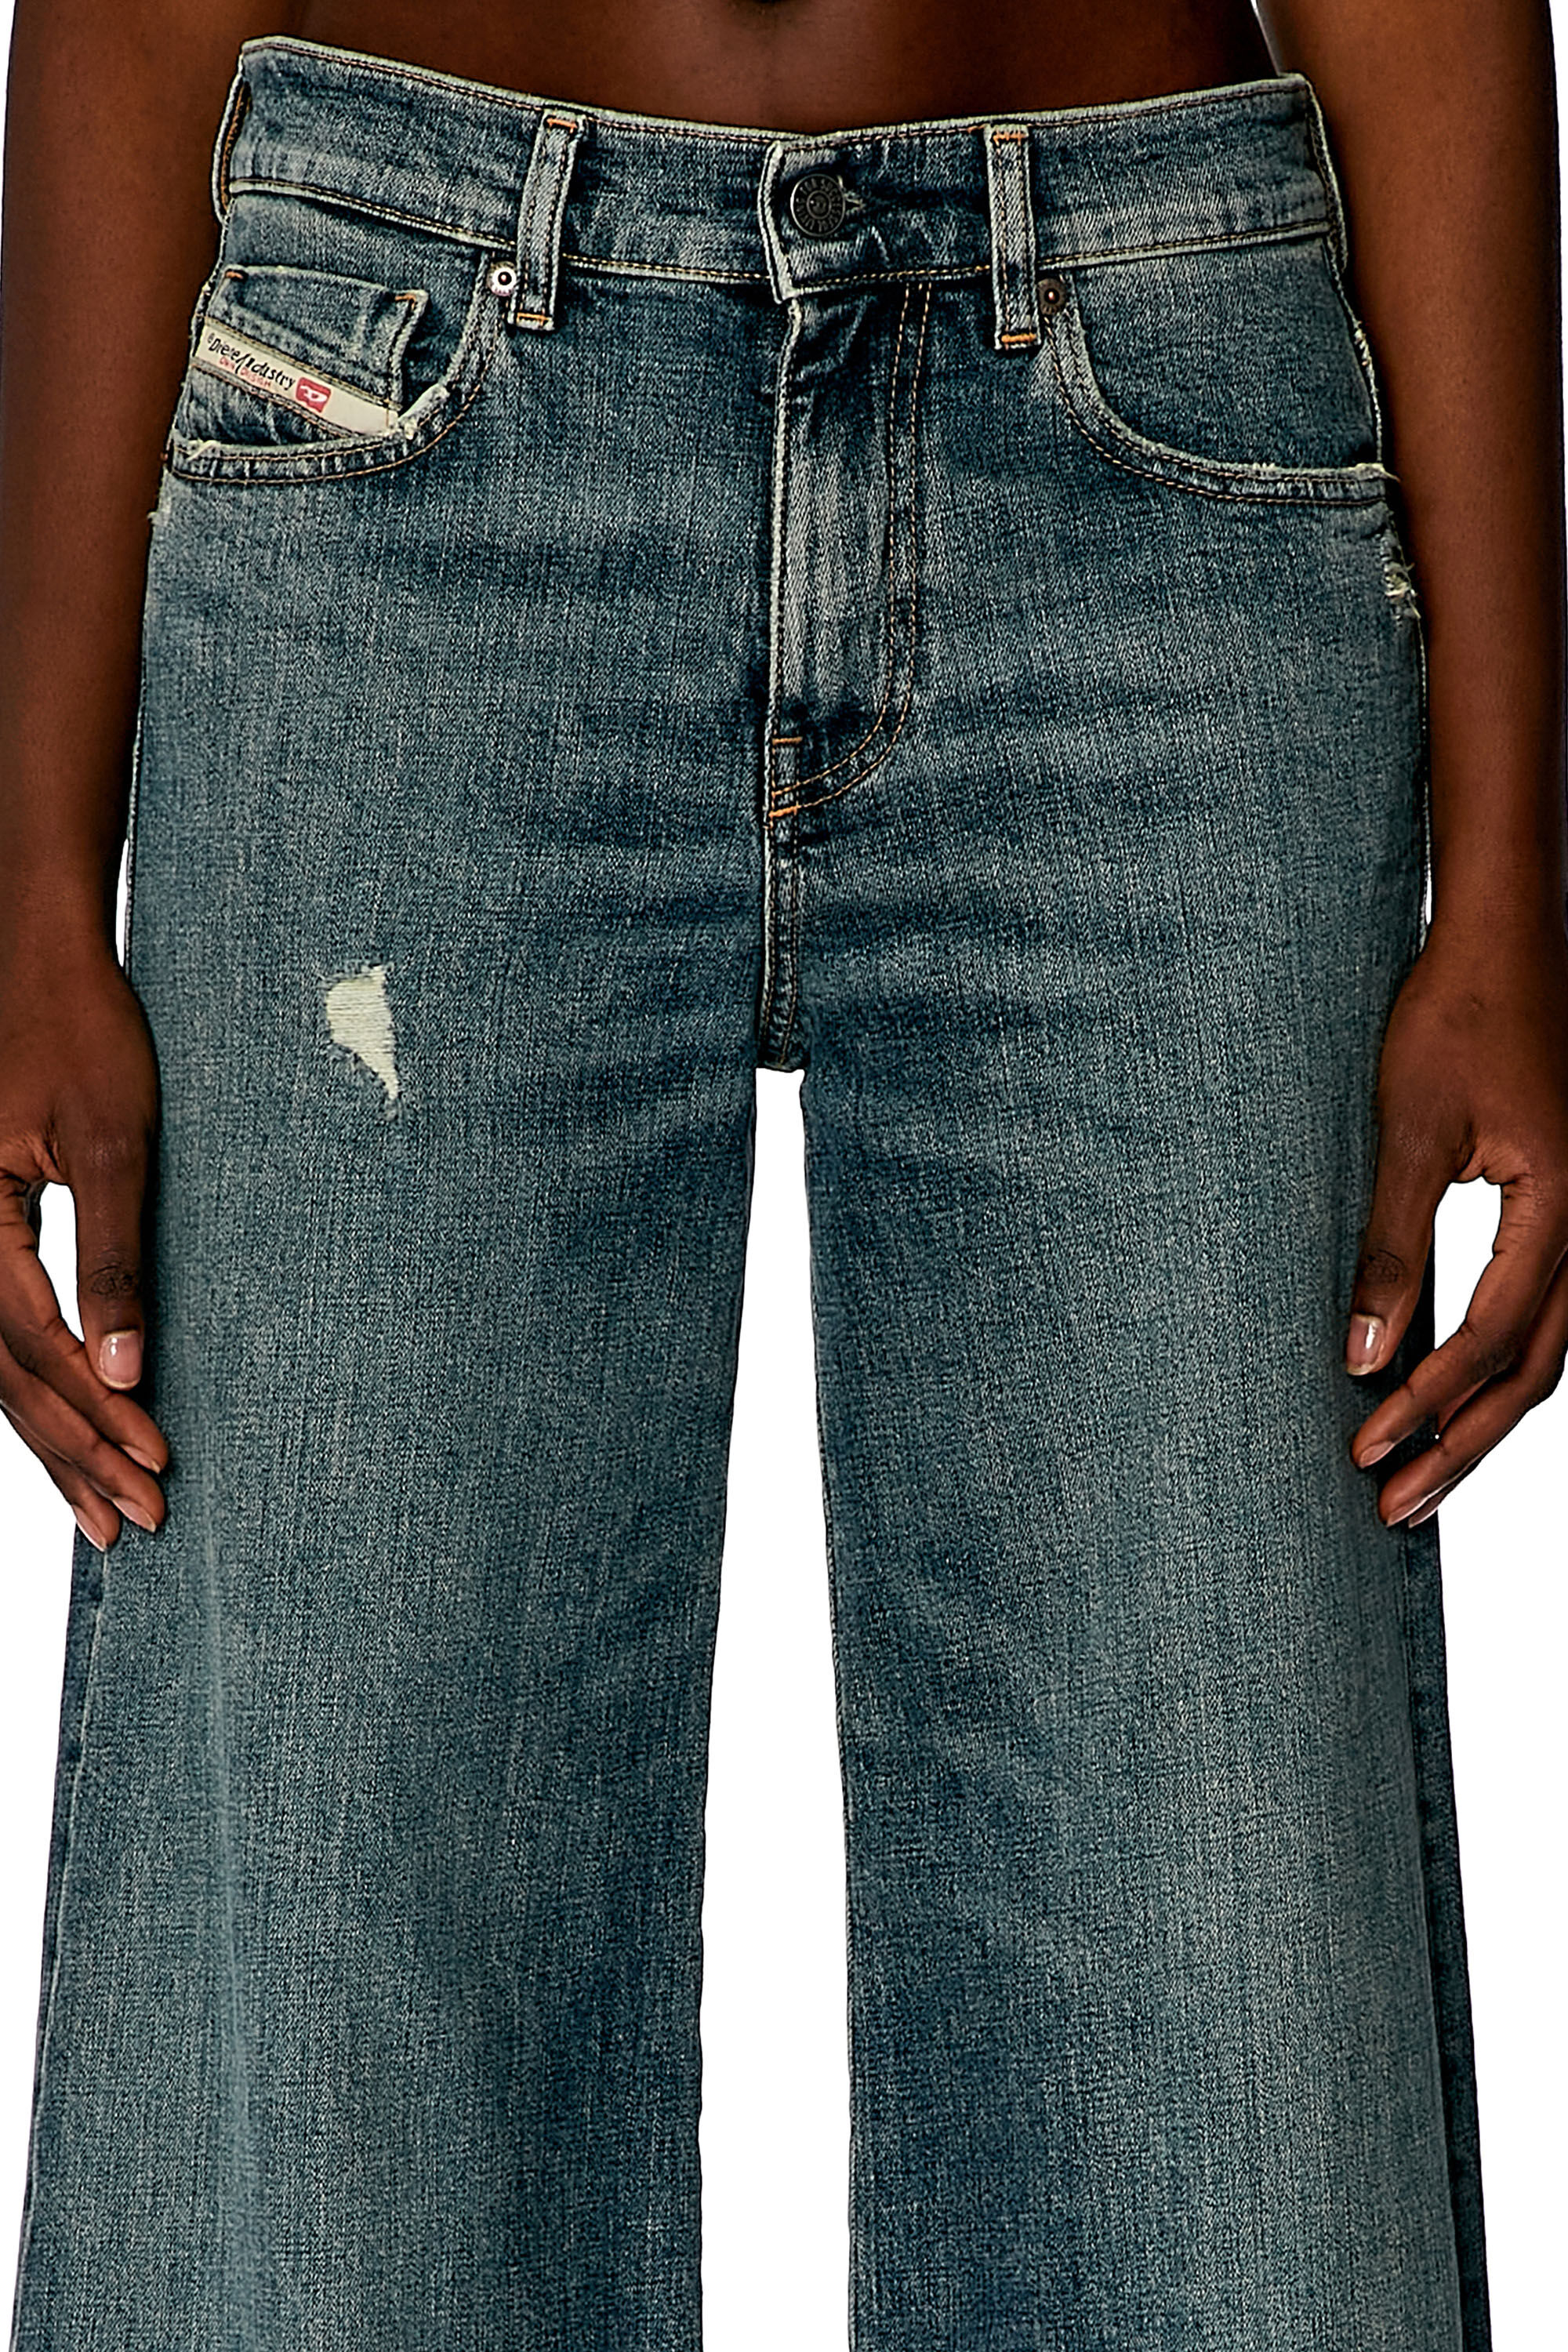 Flada 132030 – Jeans Al Mayor Desde 7 Unidades